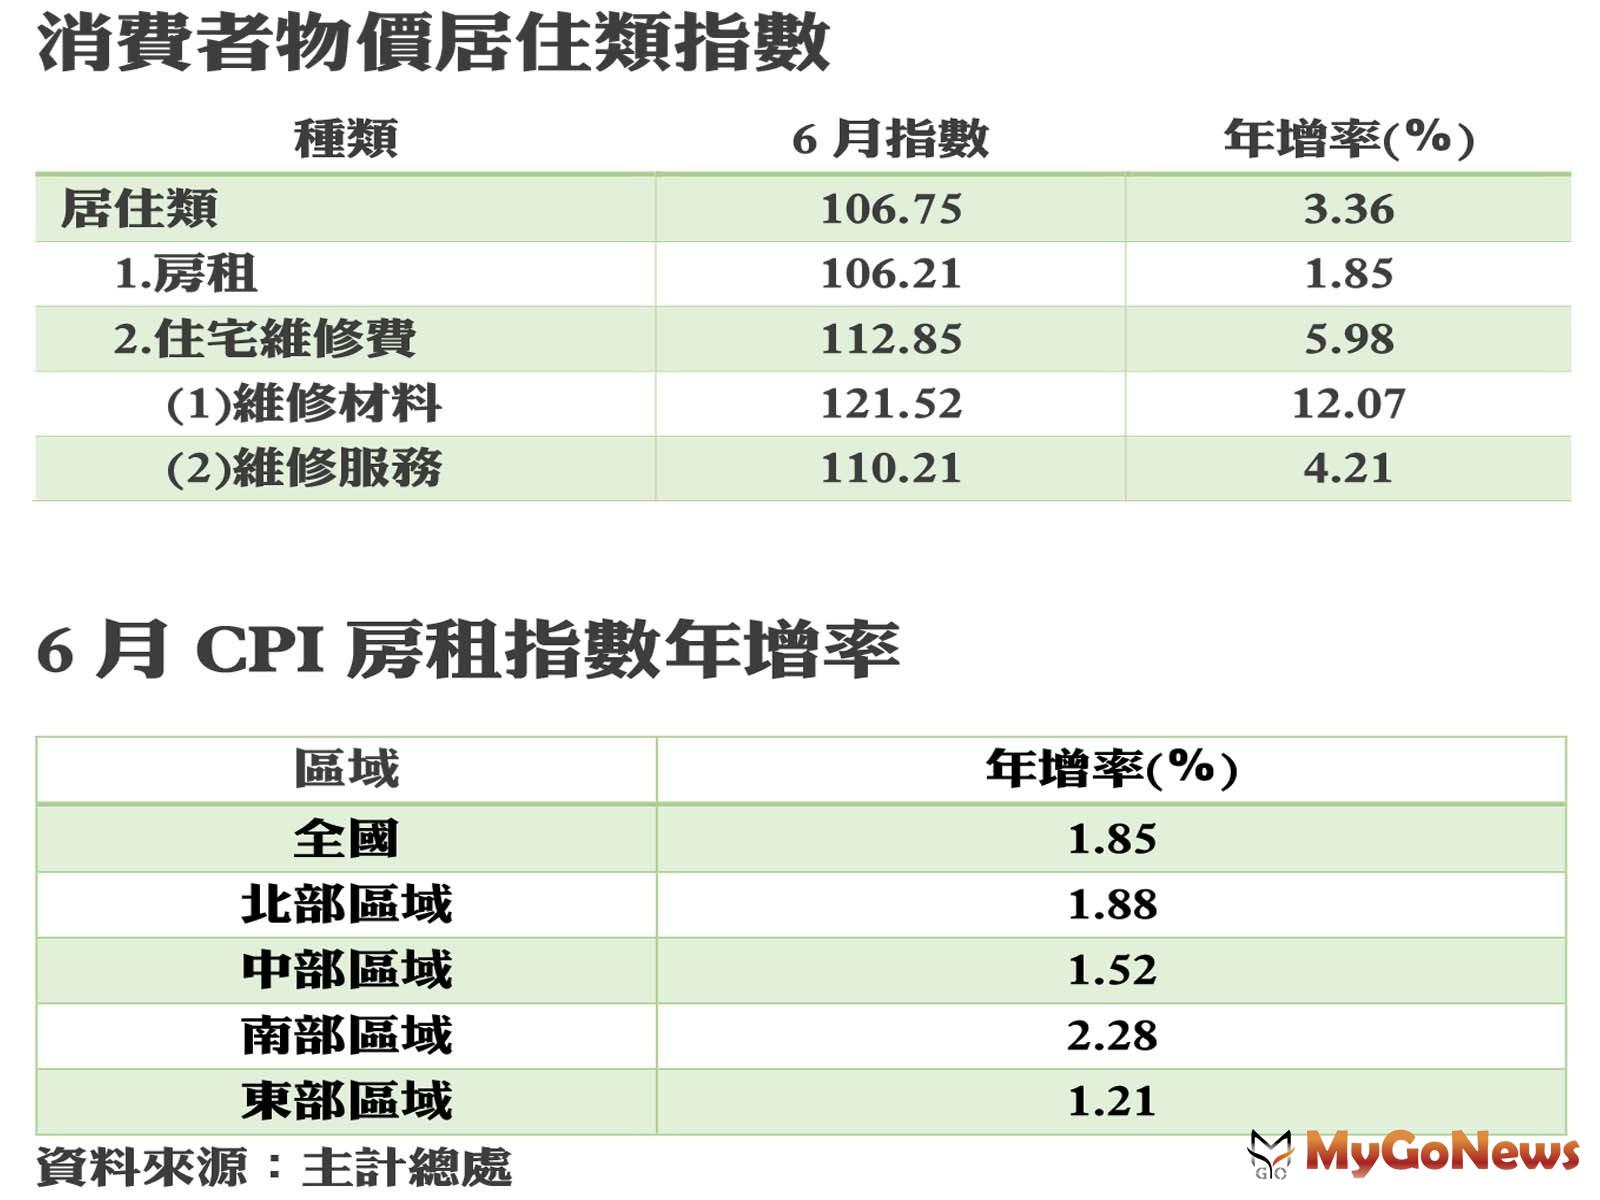 消費者物價居住類指數/6月CPI房租指數年增率 MyGoNews房地產新聞 市場快訊